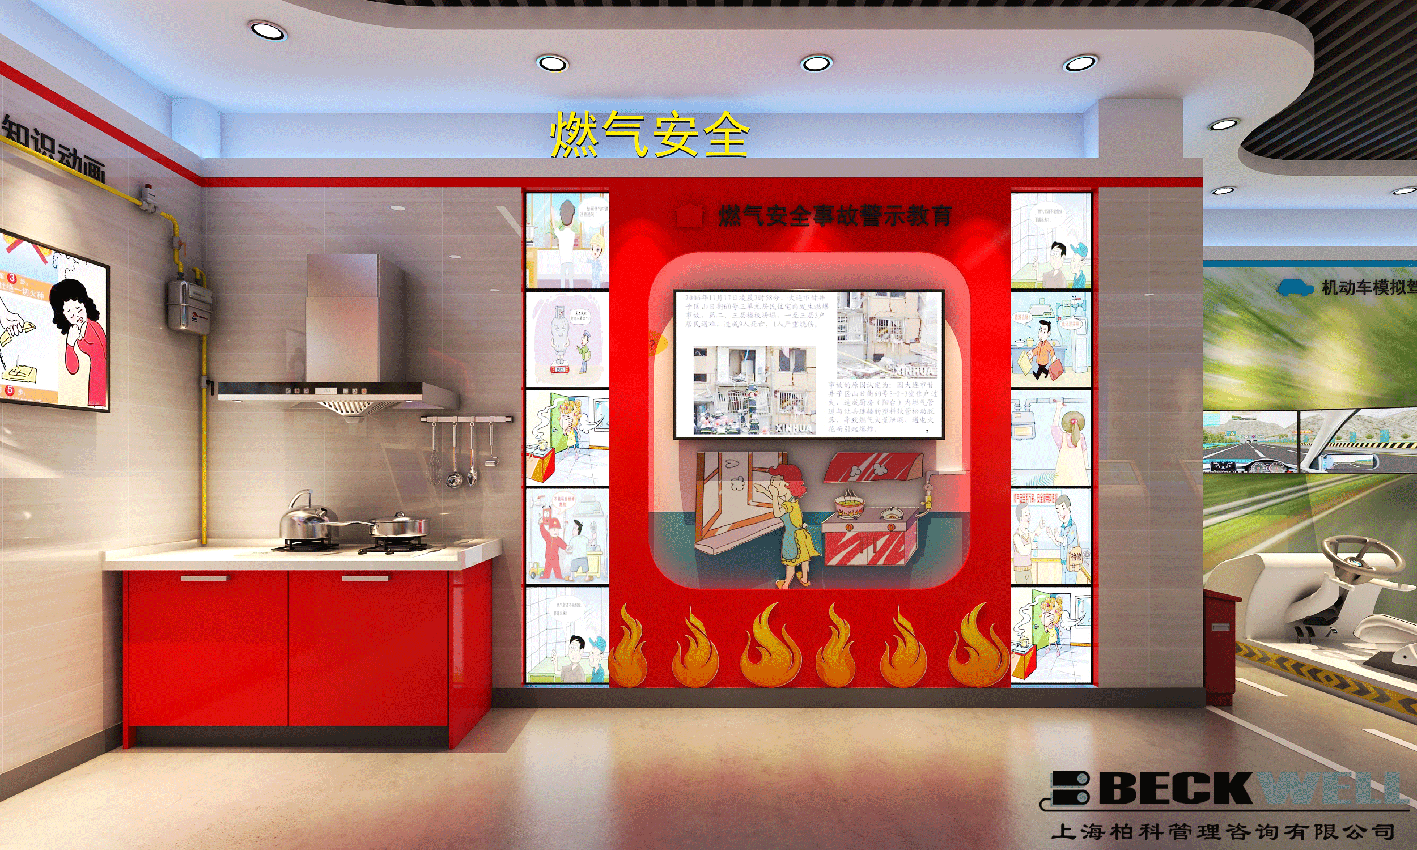 上海柏科消防安全体验馆热门模块介绍